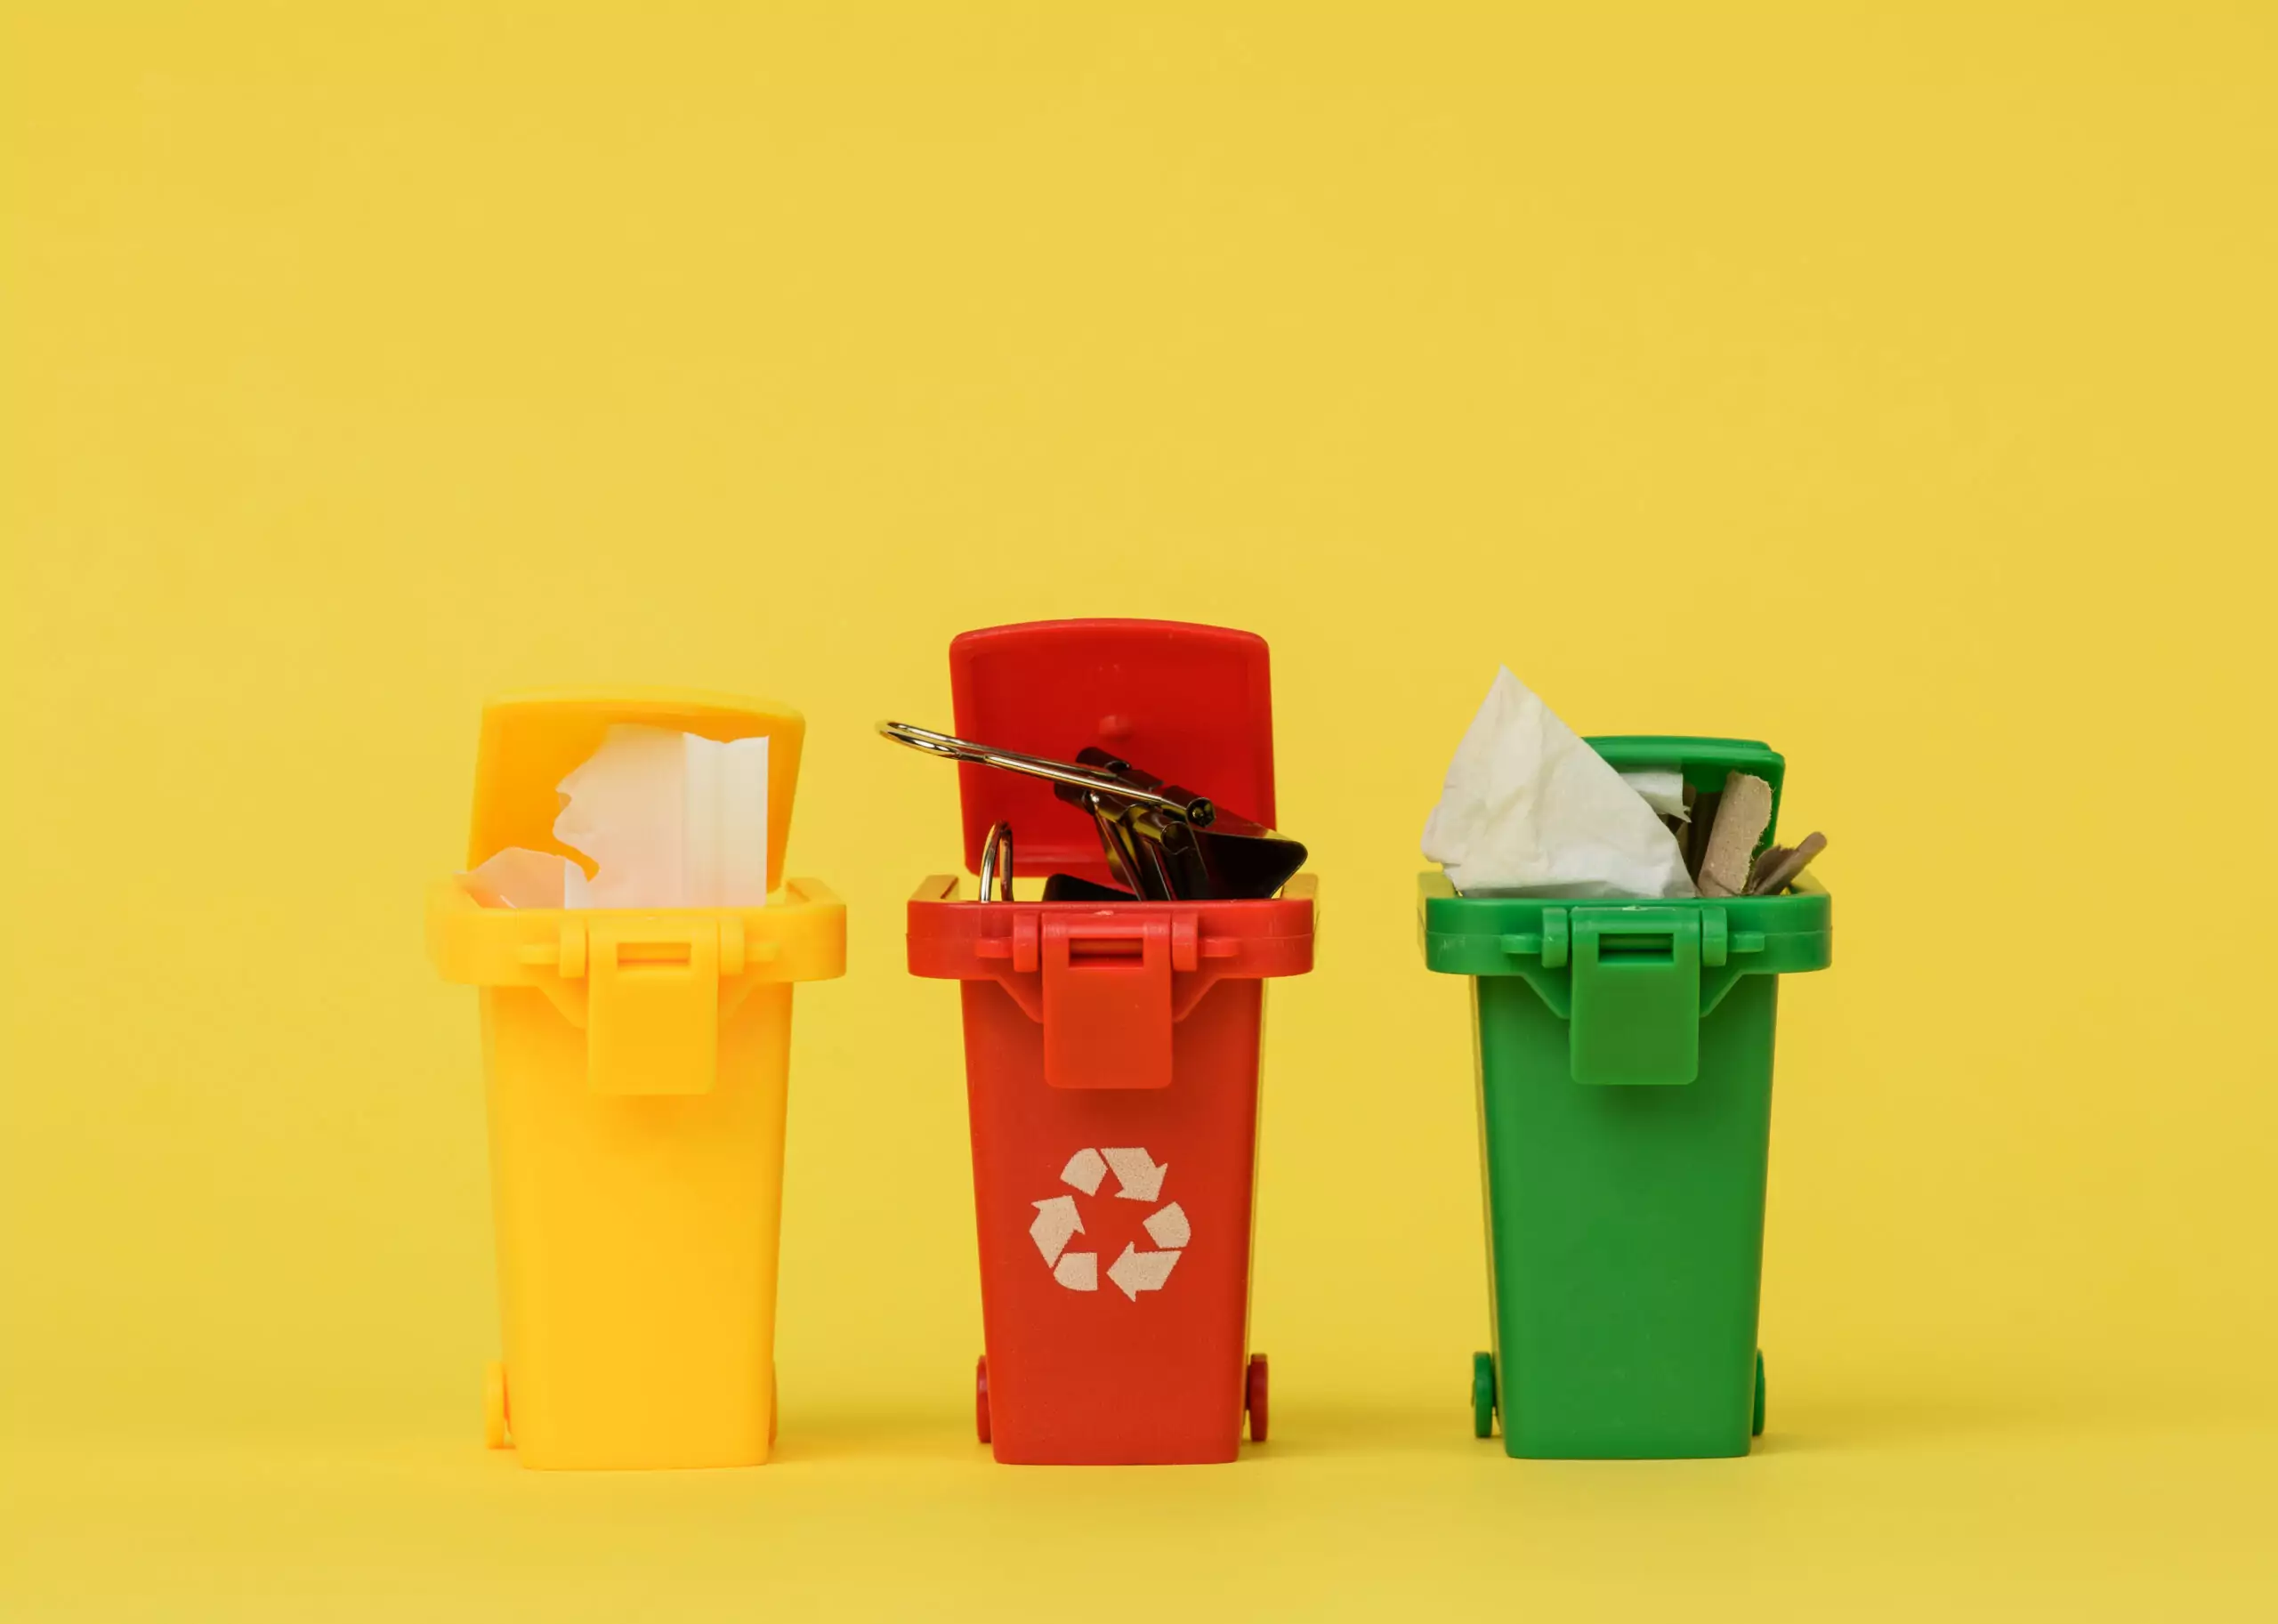 Quer aprender um pouco mais sobre separação de lixo? Então, você precisa ler o artigo de hoje!